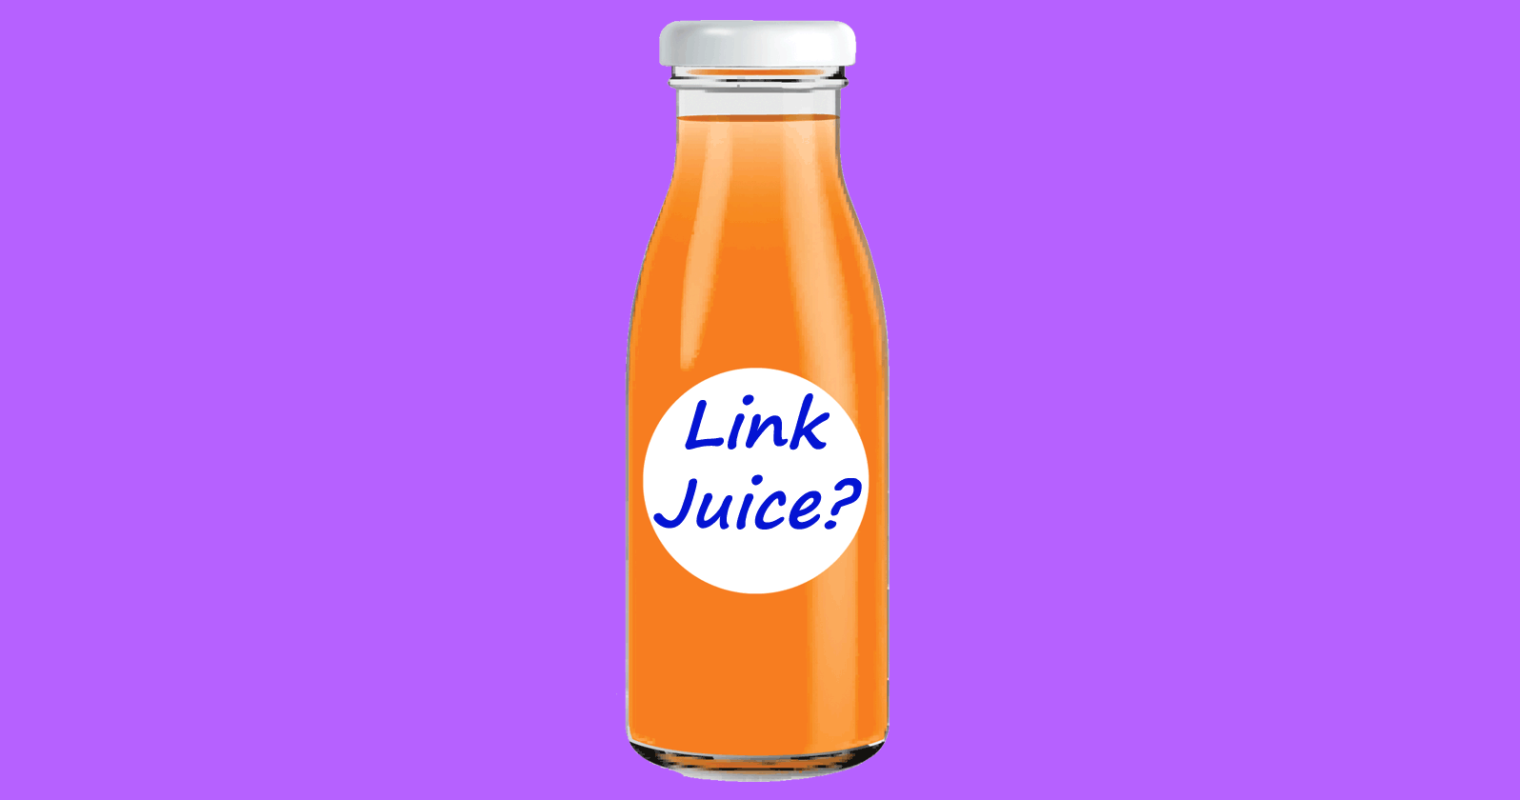  لینک جویس یا عصاره لینک (Link juice) در سئو چیست؟